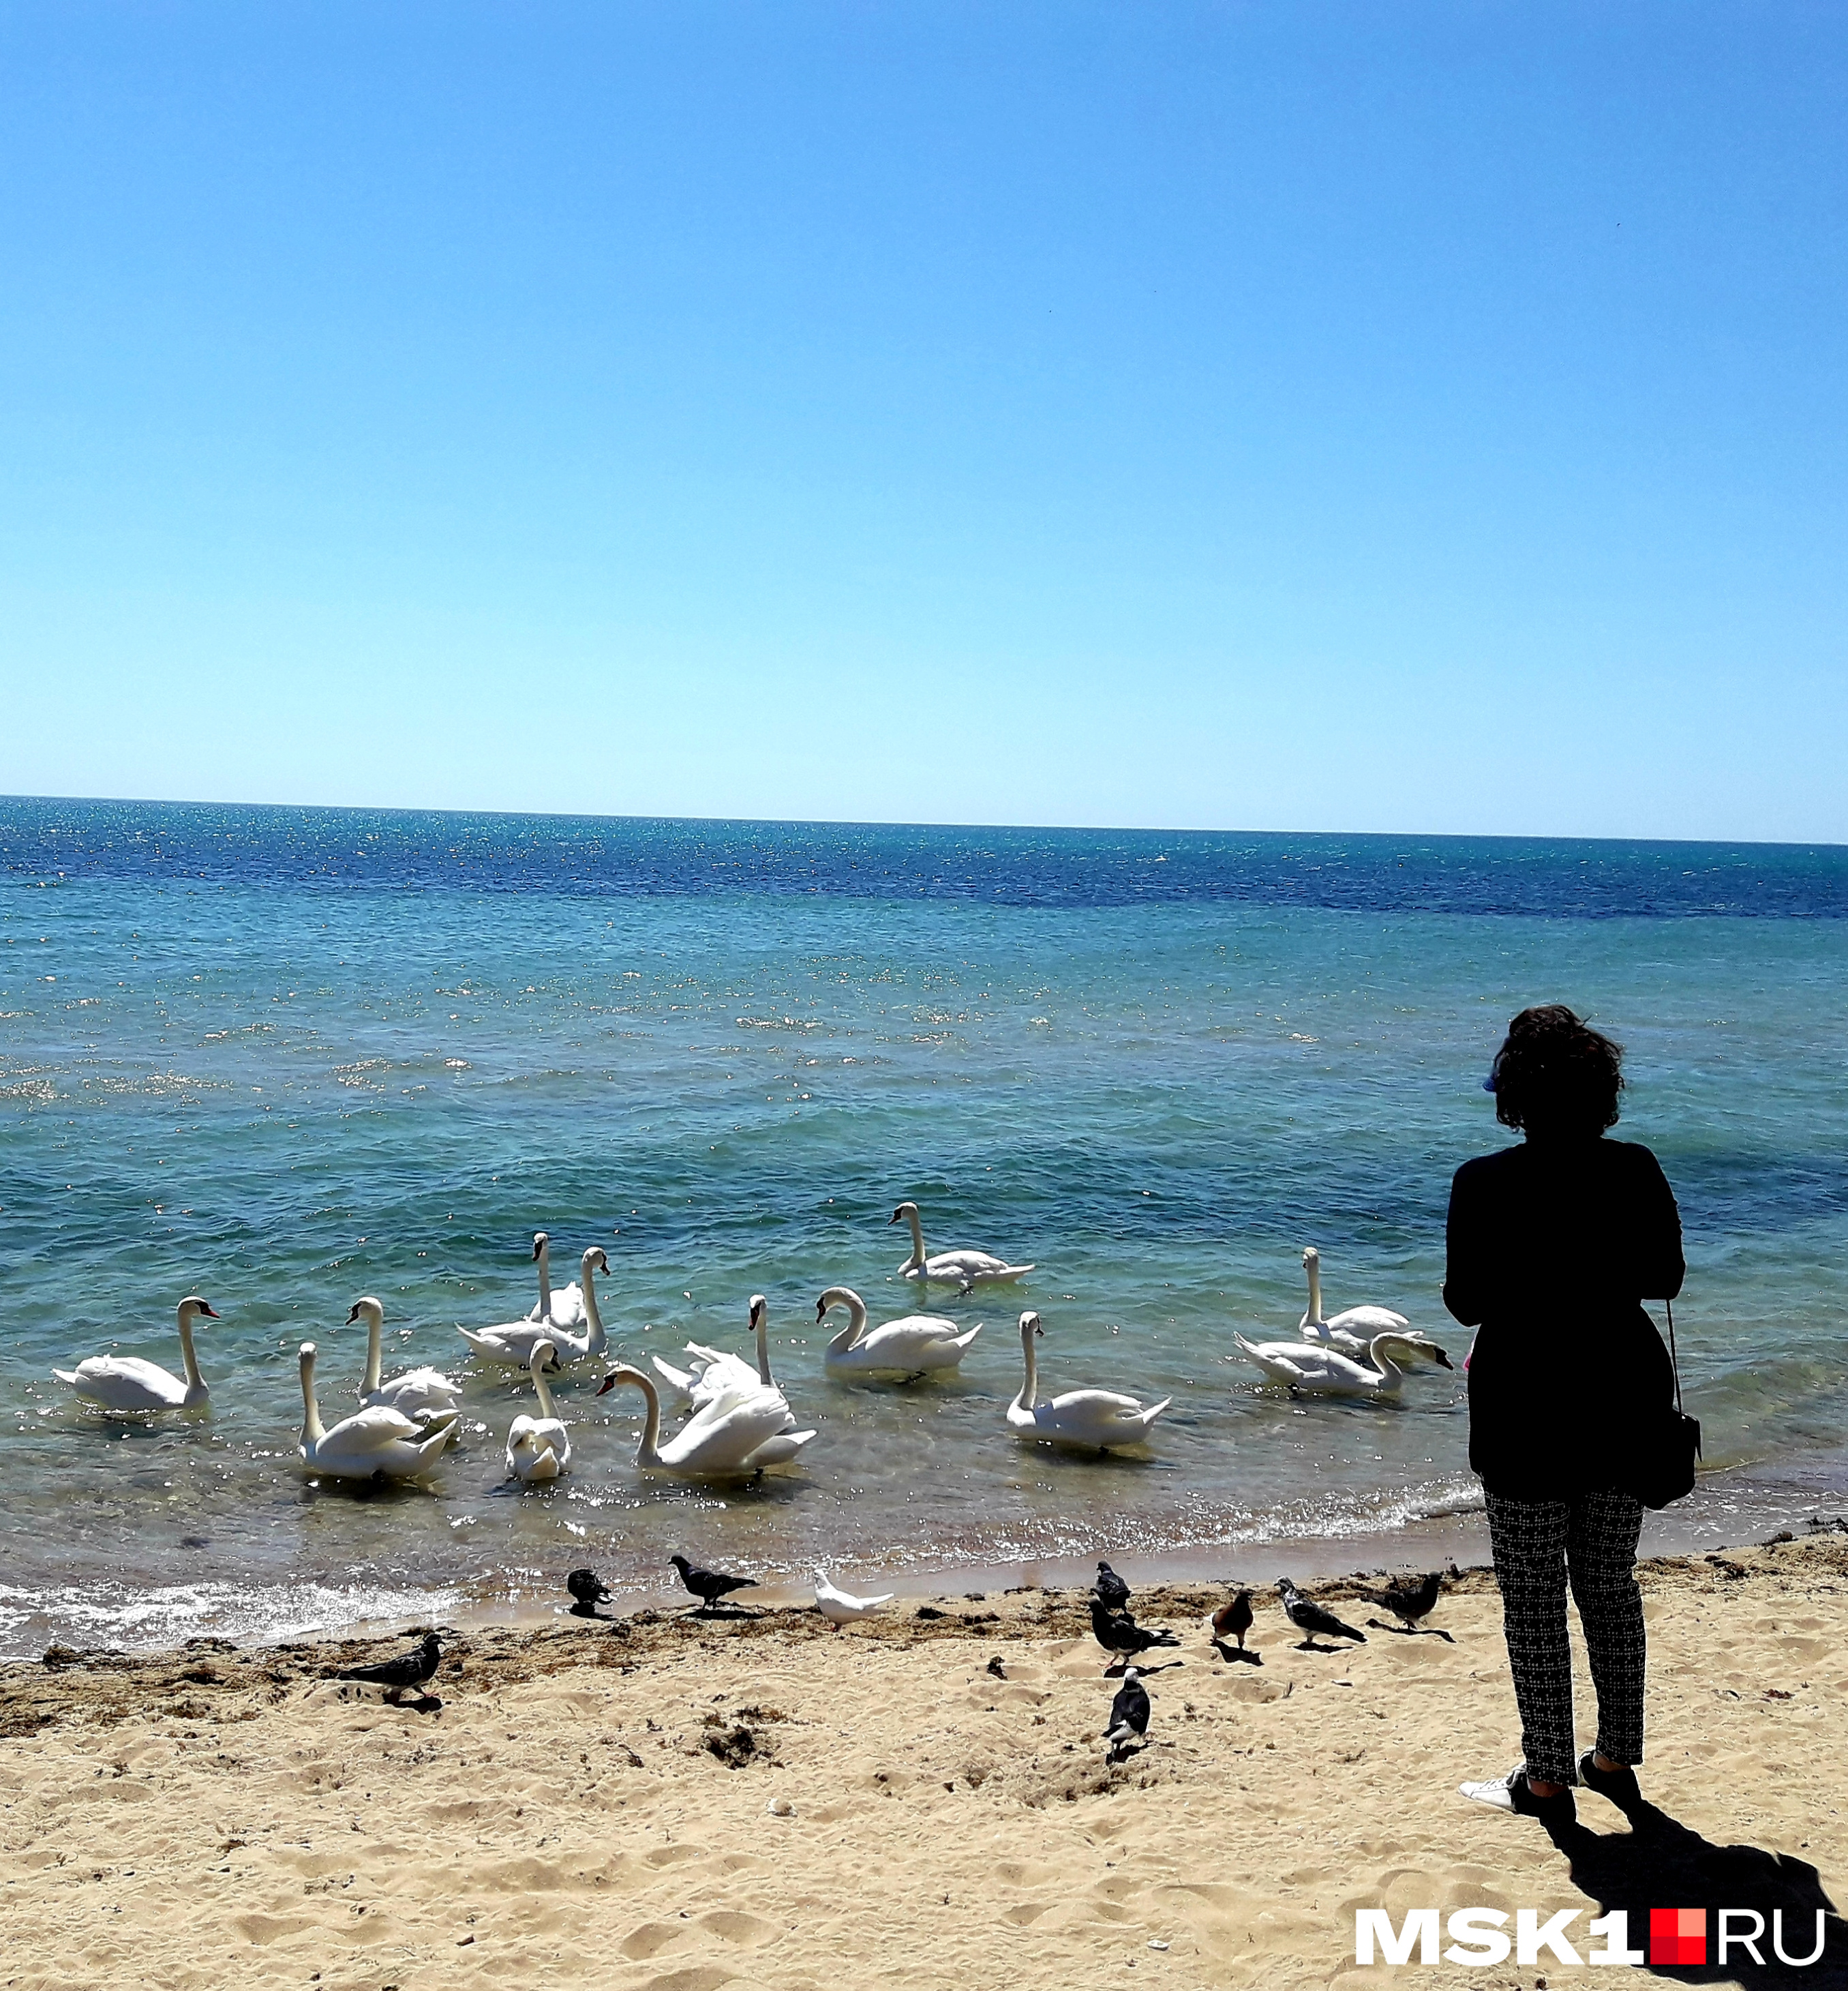 Одно из любимых занятий туристов — кормить лебедей на городских пляжах